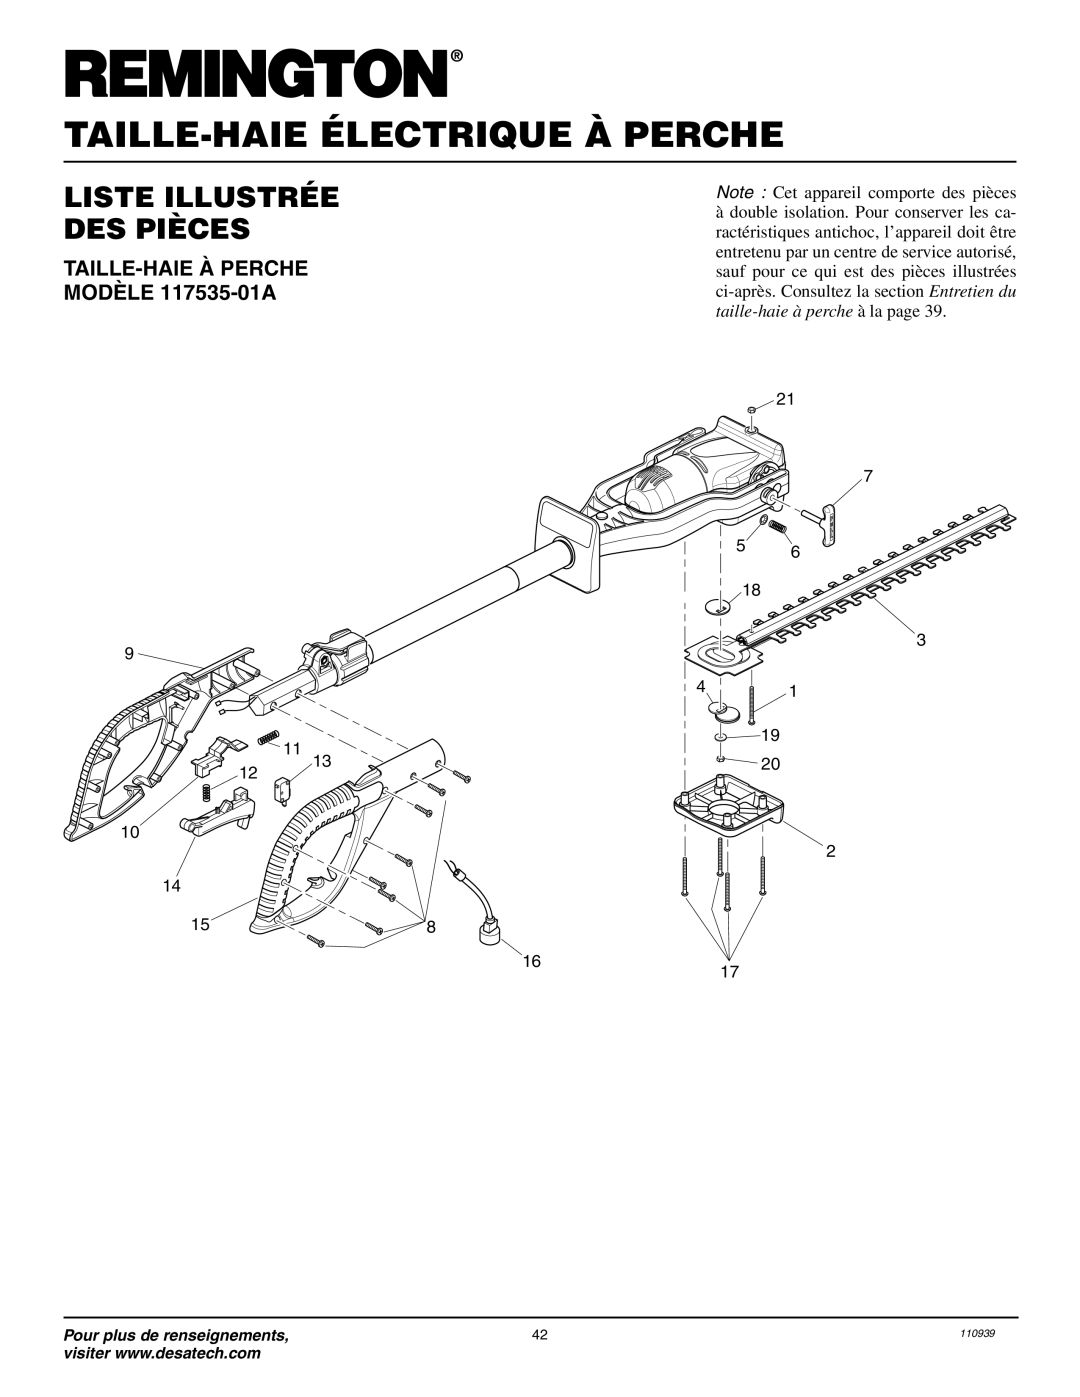 Remington Power Tools owner manual Liste Illustrée Des Pièces, TAILLE-HAIE À PERCHE MODÈLE 117535-01A 